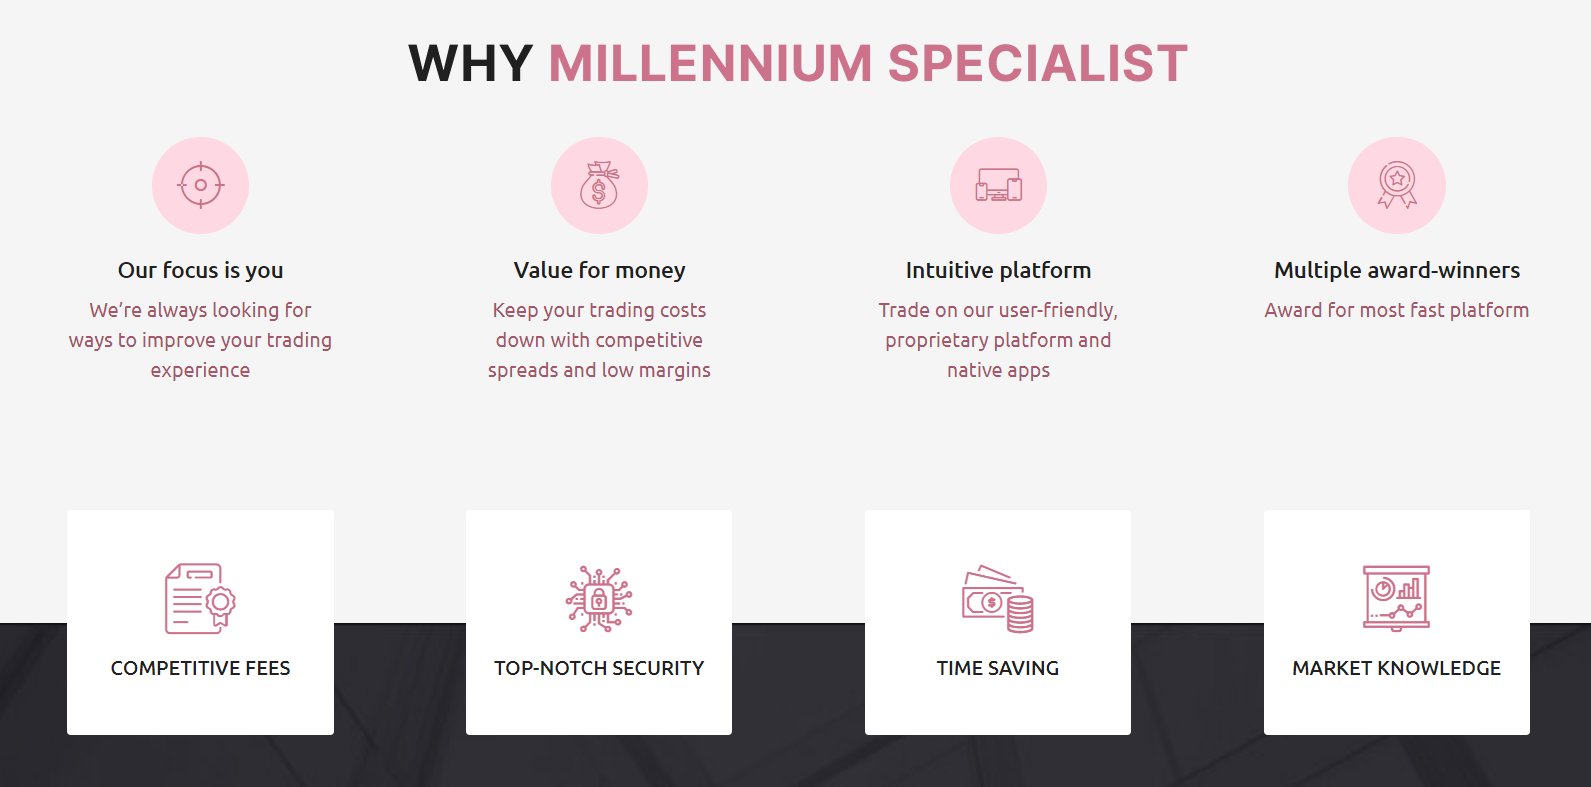 Millennium Specialist рассказывает о многочисленных преимуществах своей технологии.